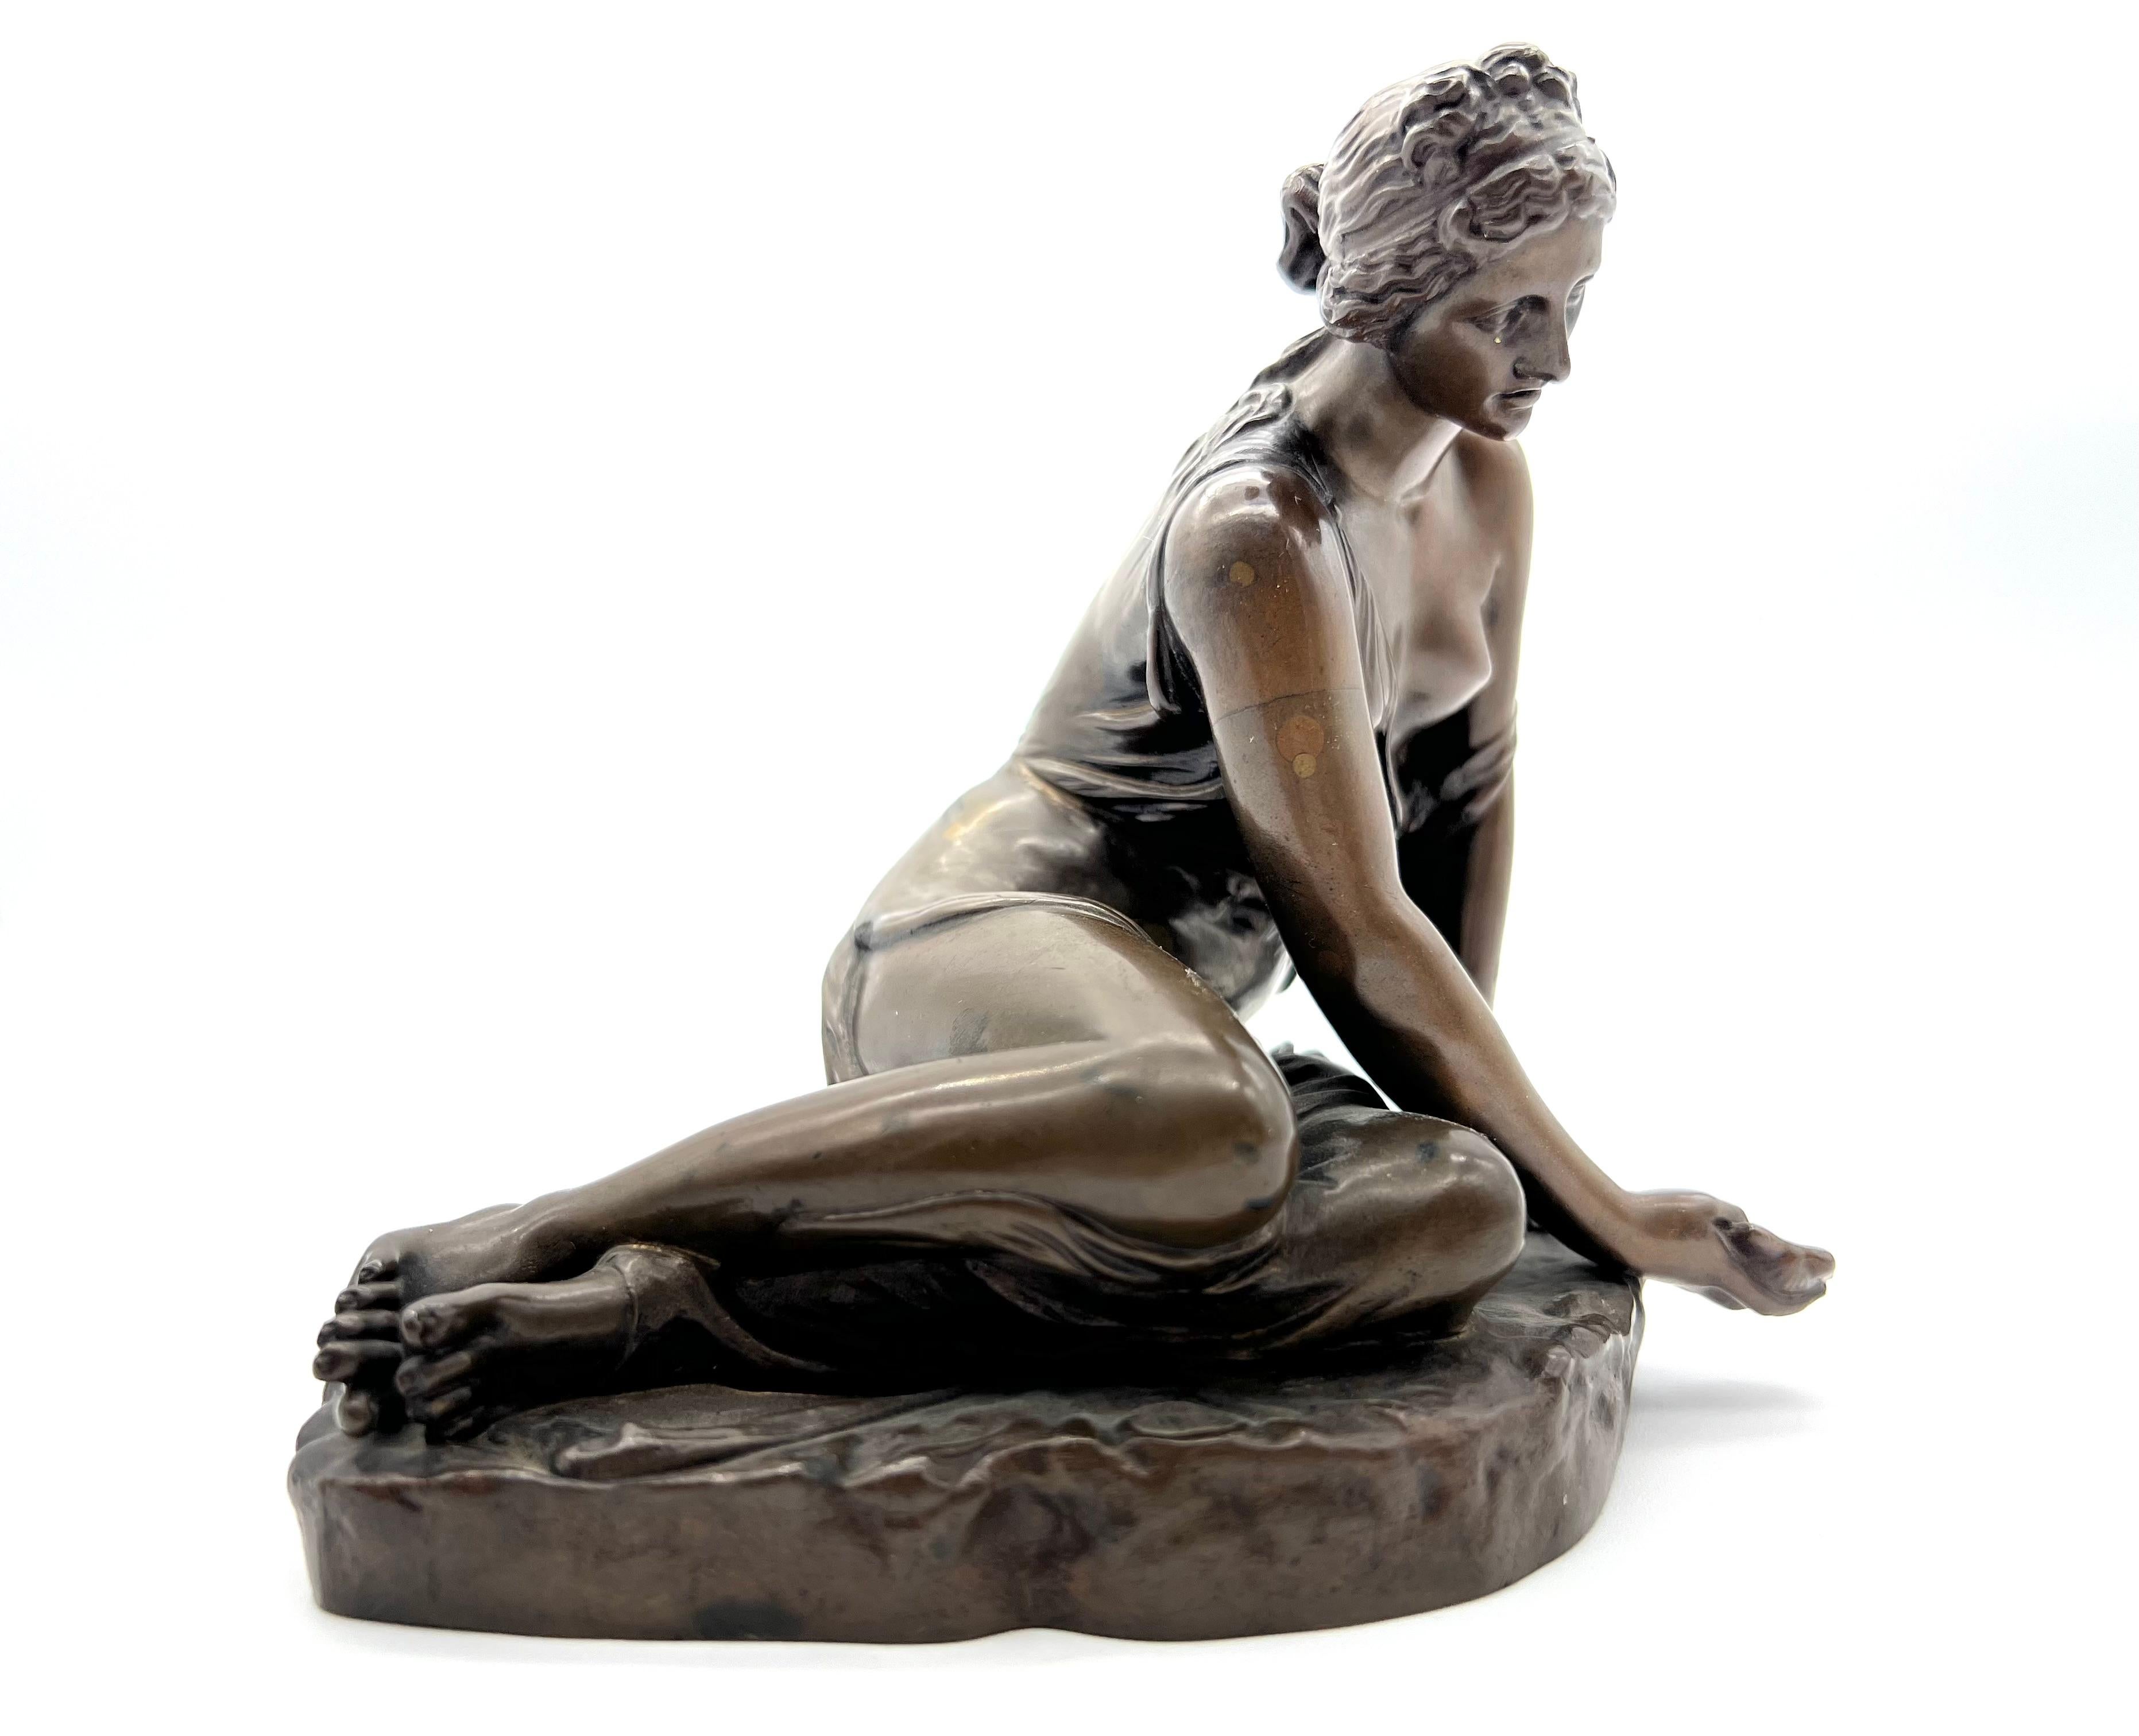 Cette sculpture en bronze représentant une nymphe à la coquille Borghese du XIXe siècle a été réalisée d'après le sculpteur Antoine Coysevox (1640-1720).
La nymphe à la coquille de Borghese était l'une des sculptures présentes dans le jardin de